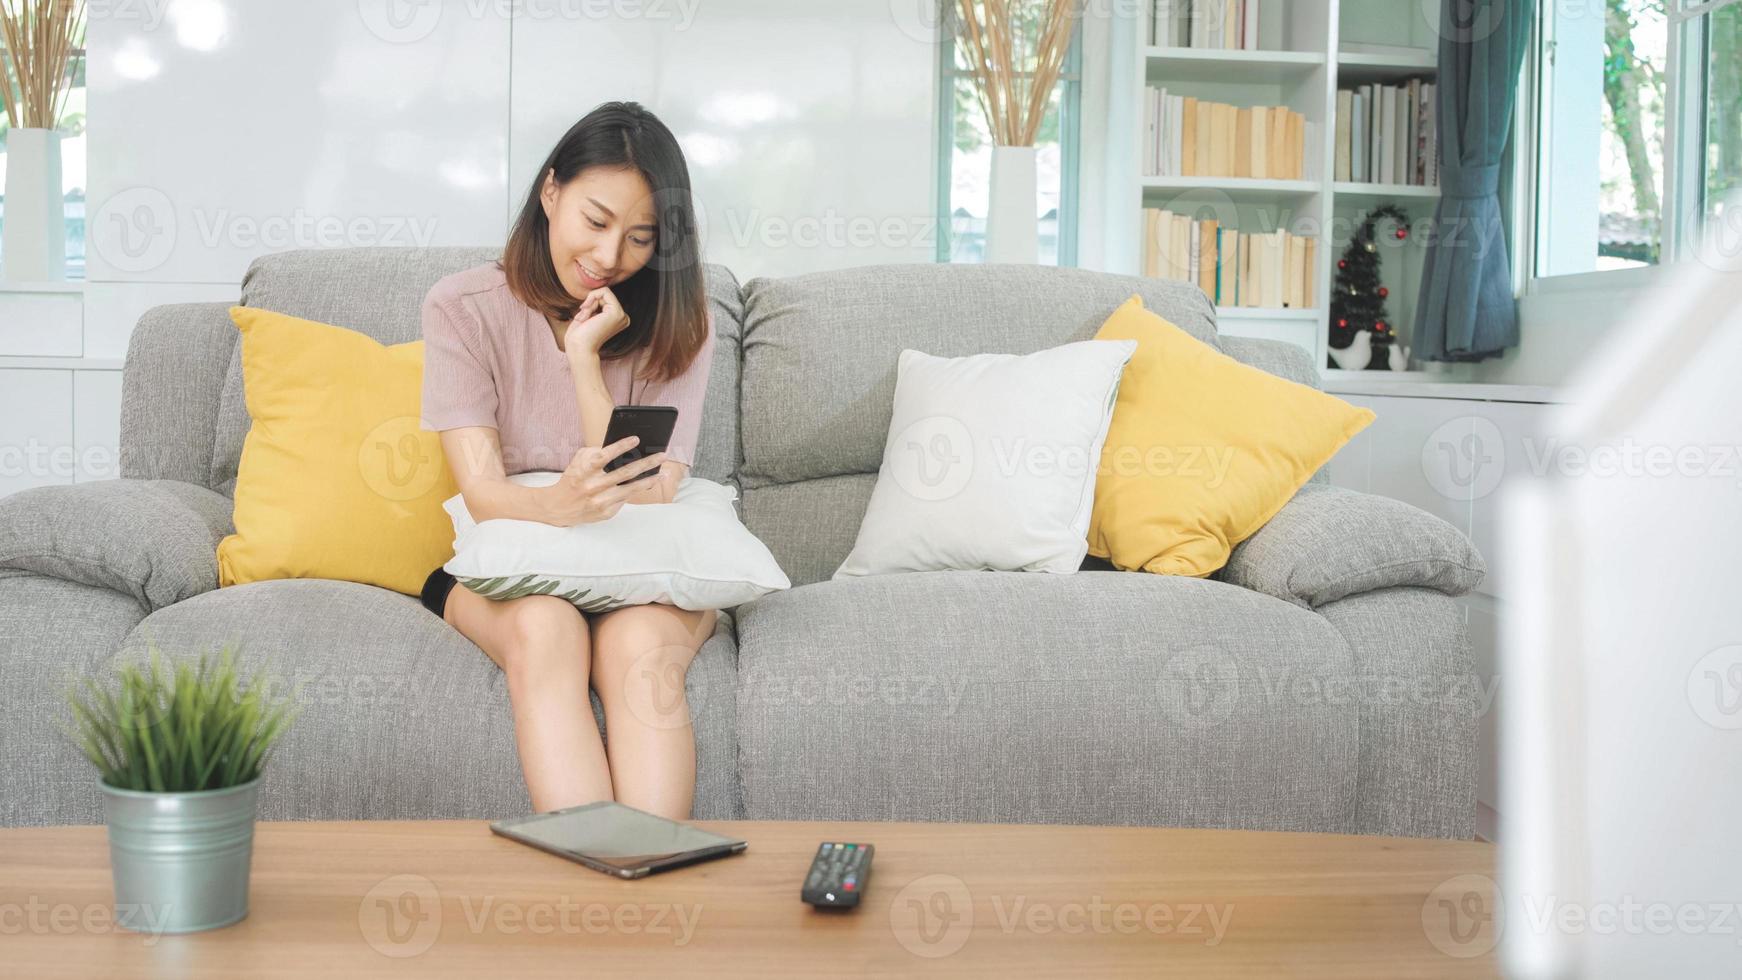 giovane donna asiatica che utilizza smartphone controllando i social media sentendosi felice sorridente mentre è sdraiata sul divano quando si rilassa nel soggiorno di casa. stile di vita latino e donne ispaniche di etnia al concetto di casa. foto